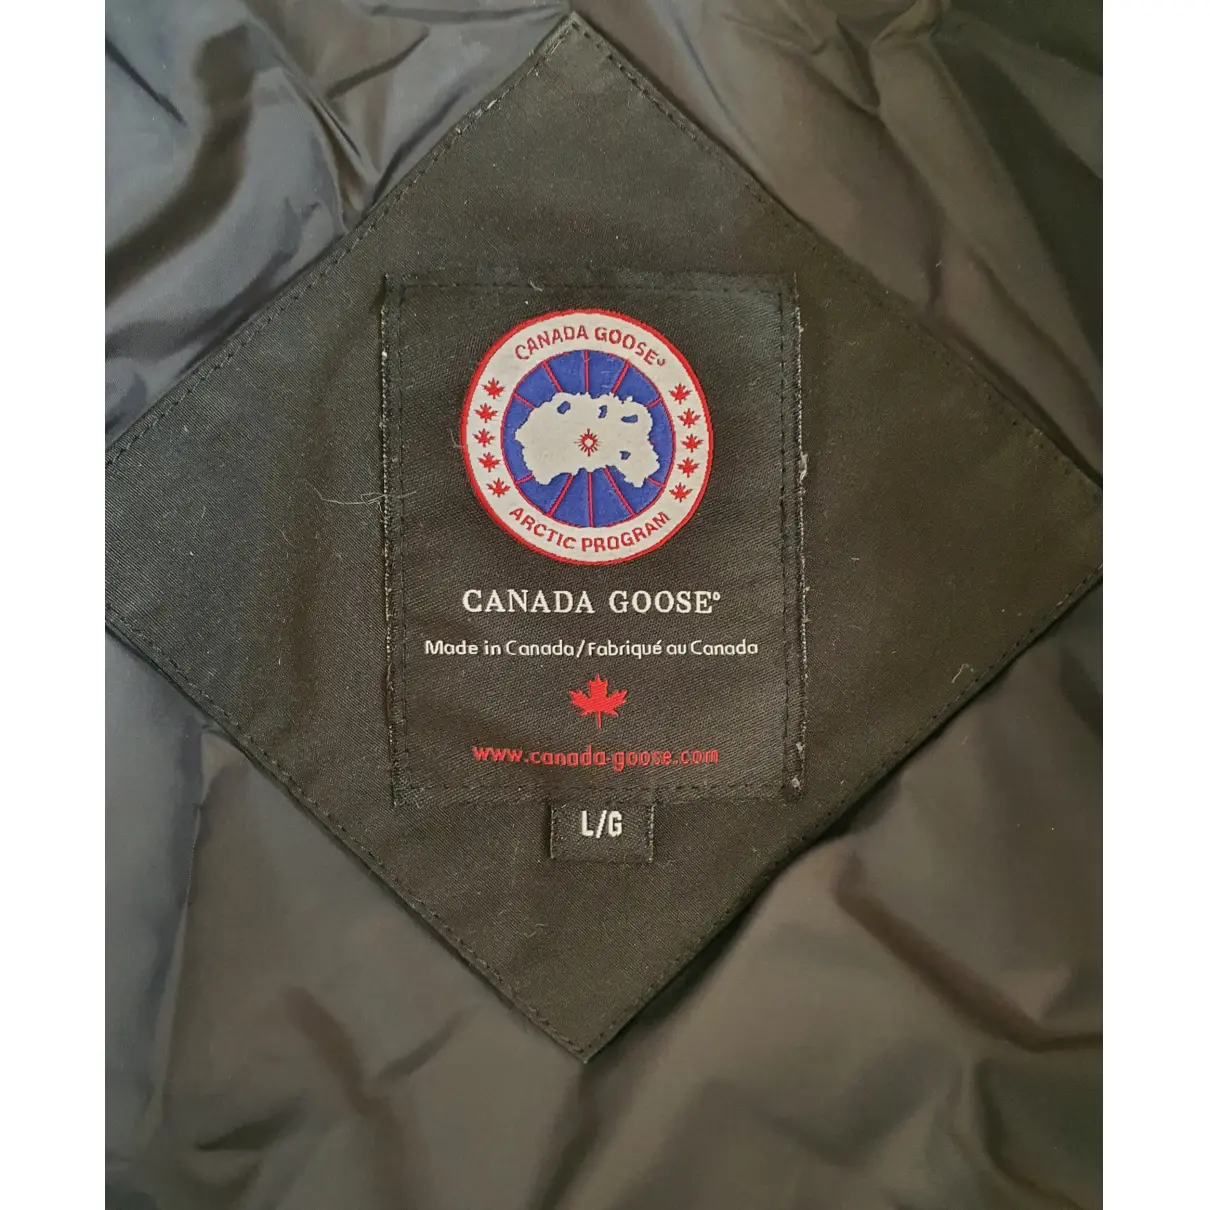 Buy Canada Goose Coat online